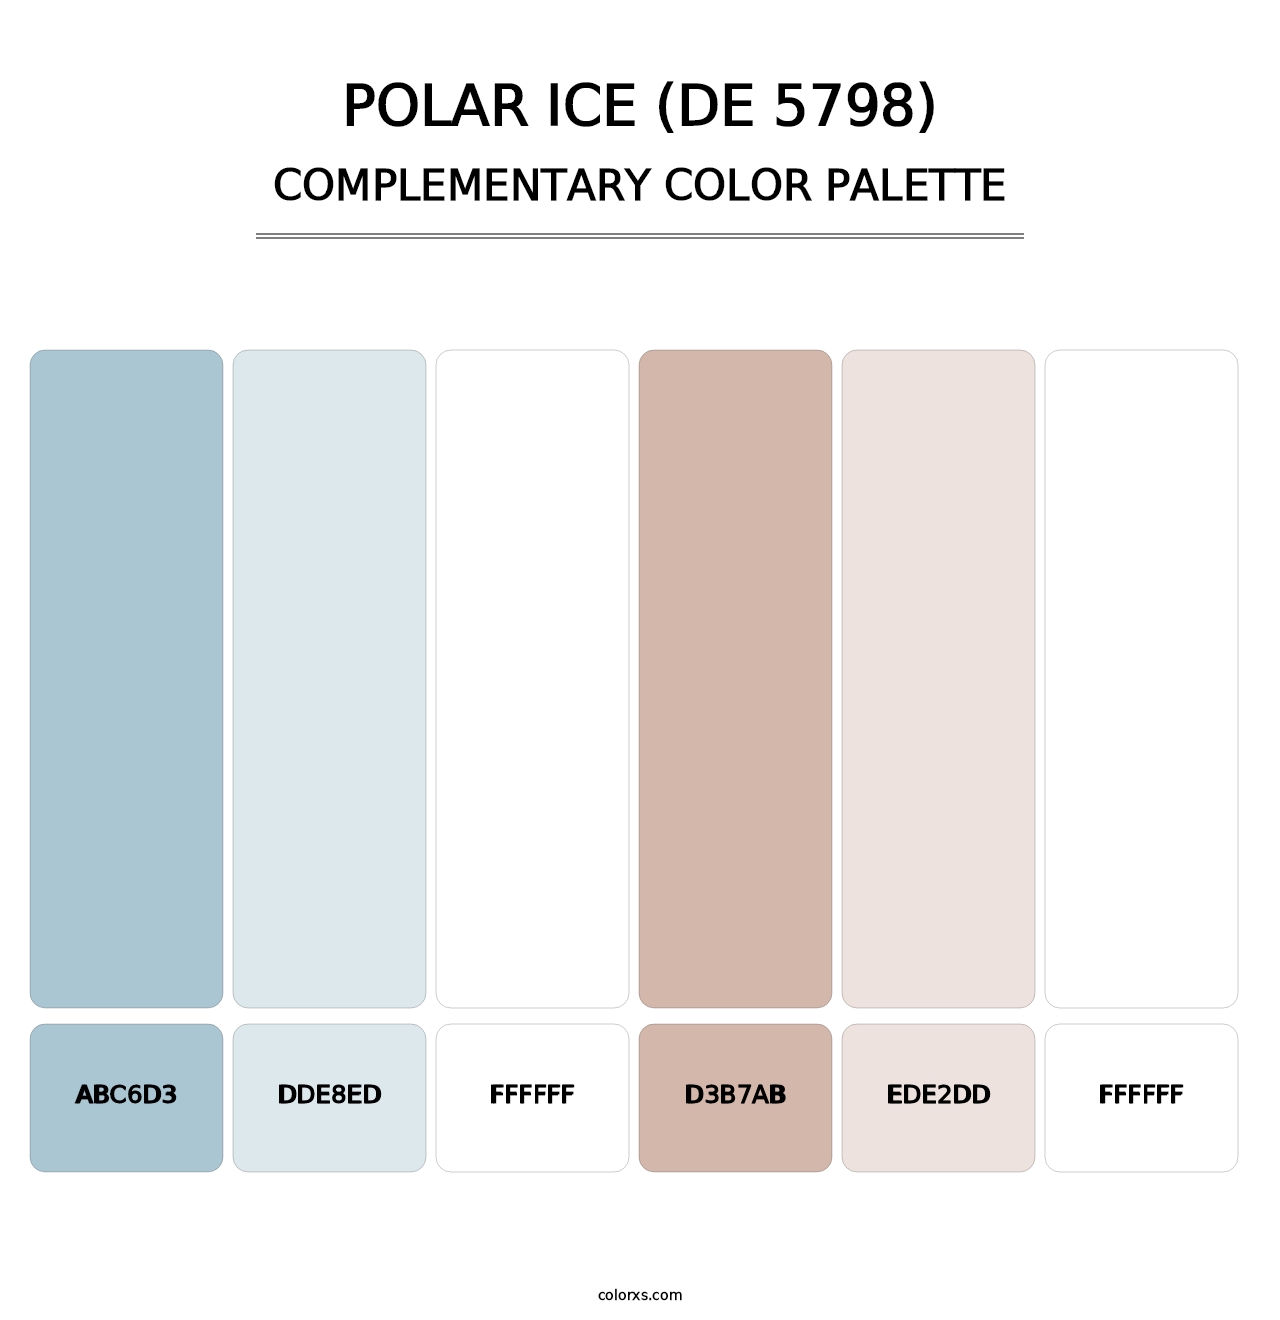 Polar Ice (DE 5798) - Complementary Color Palette